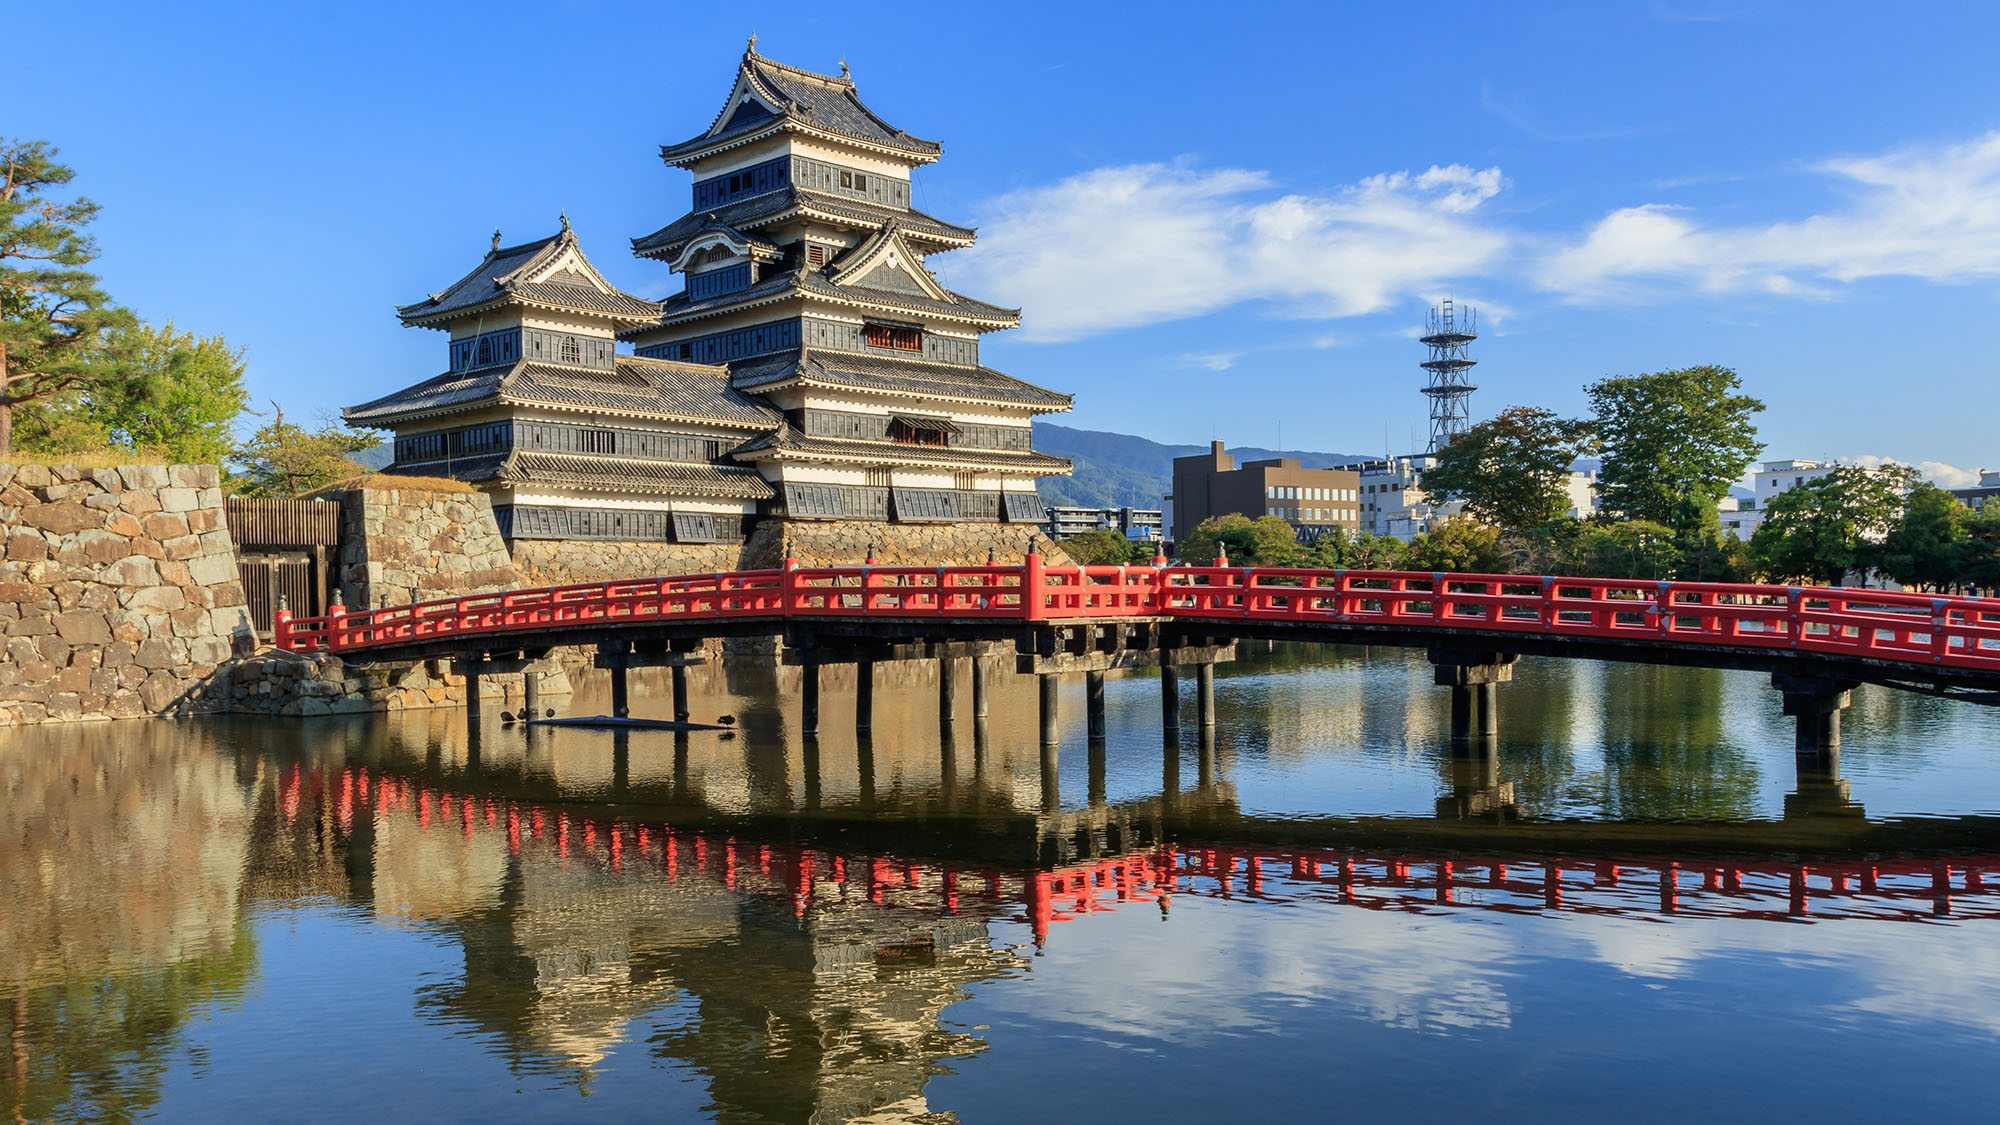 【松本城】日本の5つの国宝城郭のひとつ。ホテルから車約60分(高速道路+一般道)です。